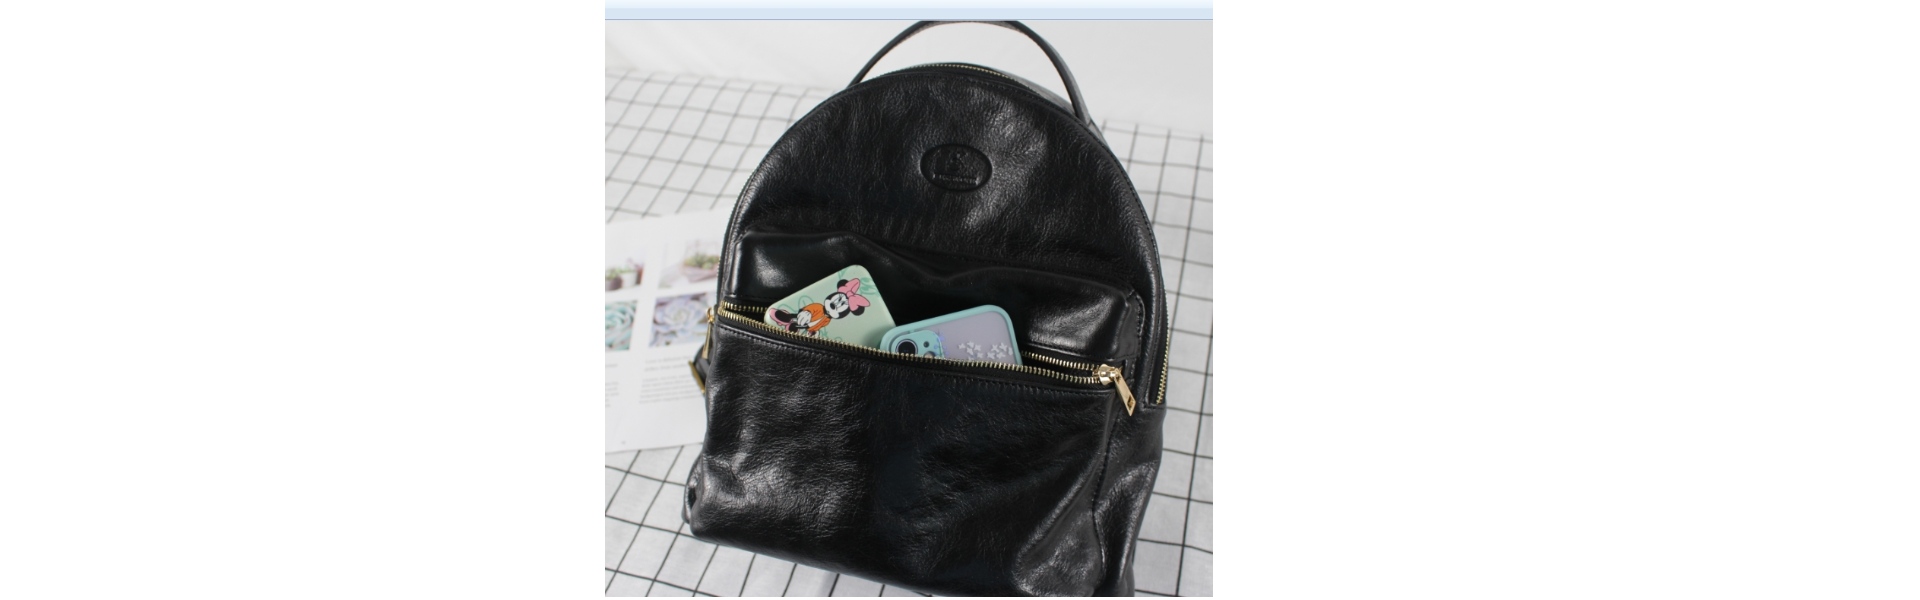 Női és férfi táskák, bőr táskák Fashion Bags, Handbags hátizsák laptop táskák,Keystone Industry Company Limited